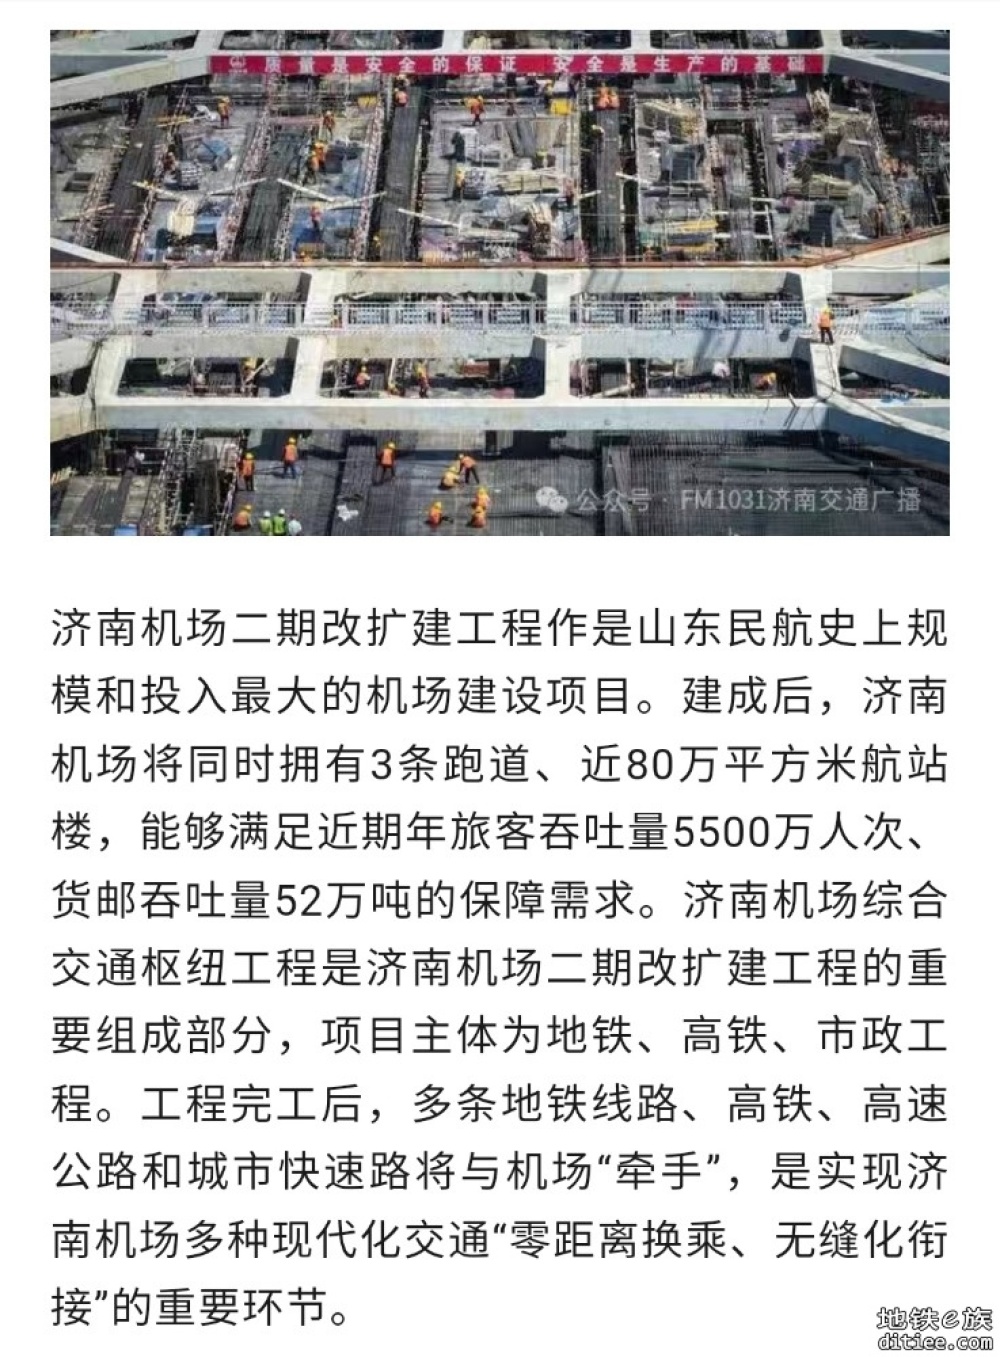 济南机场二期改扩建工程地铁3号线代建段完成主体结构施工